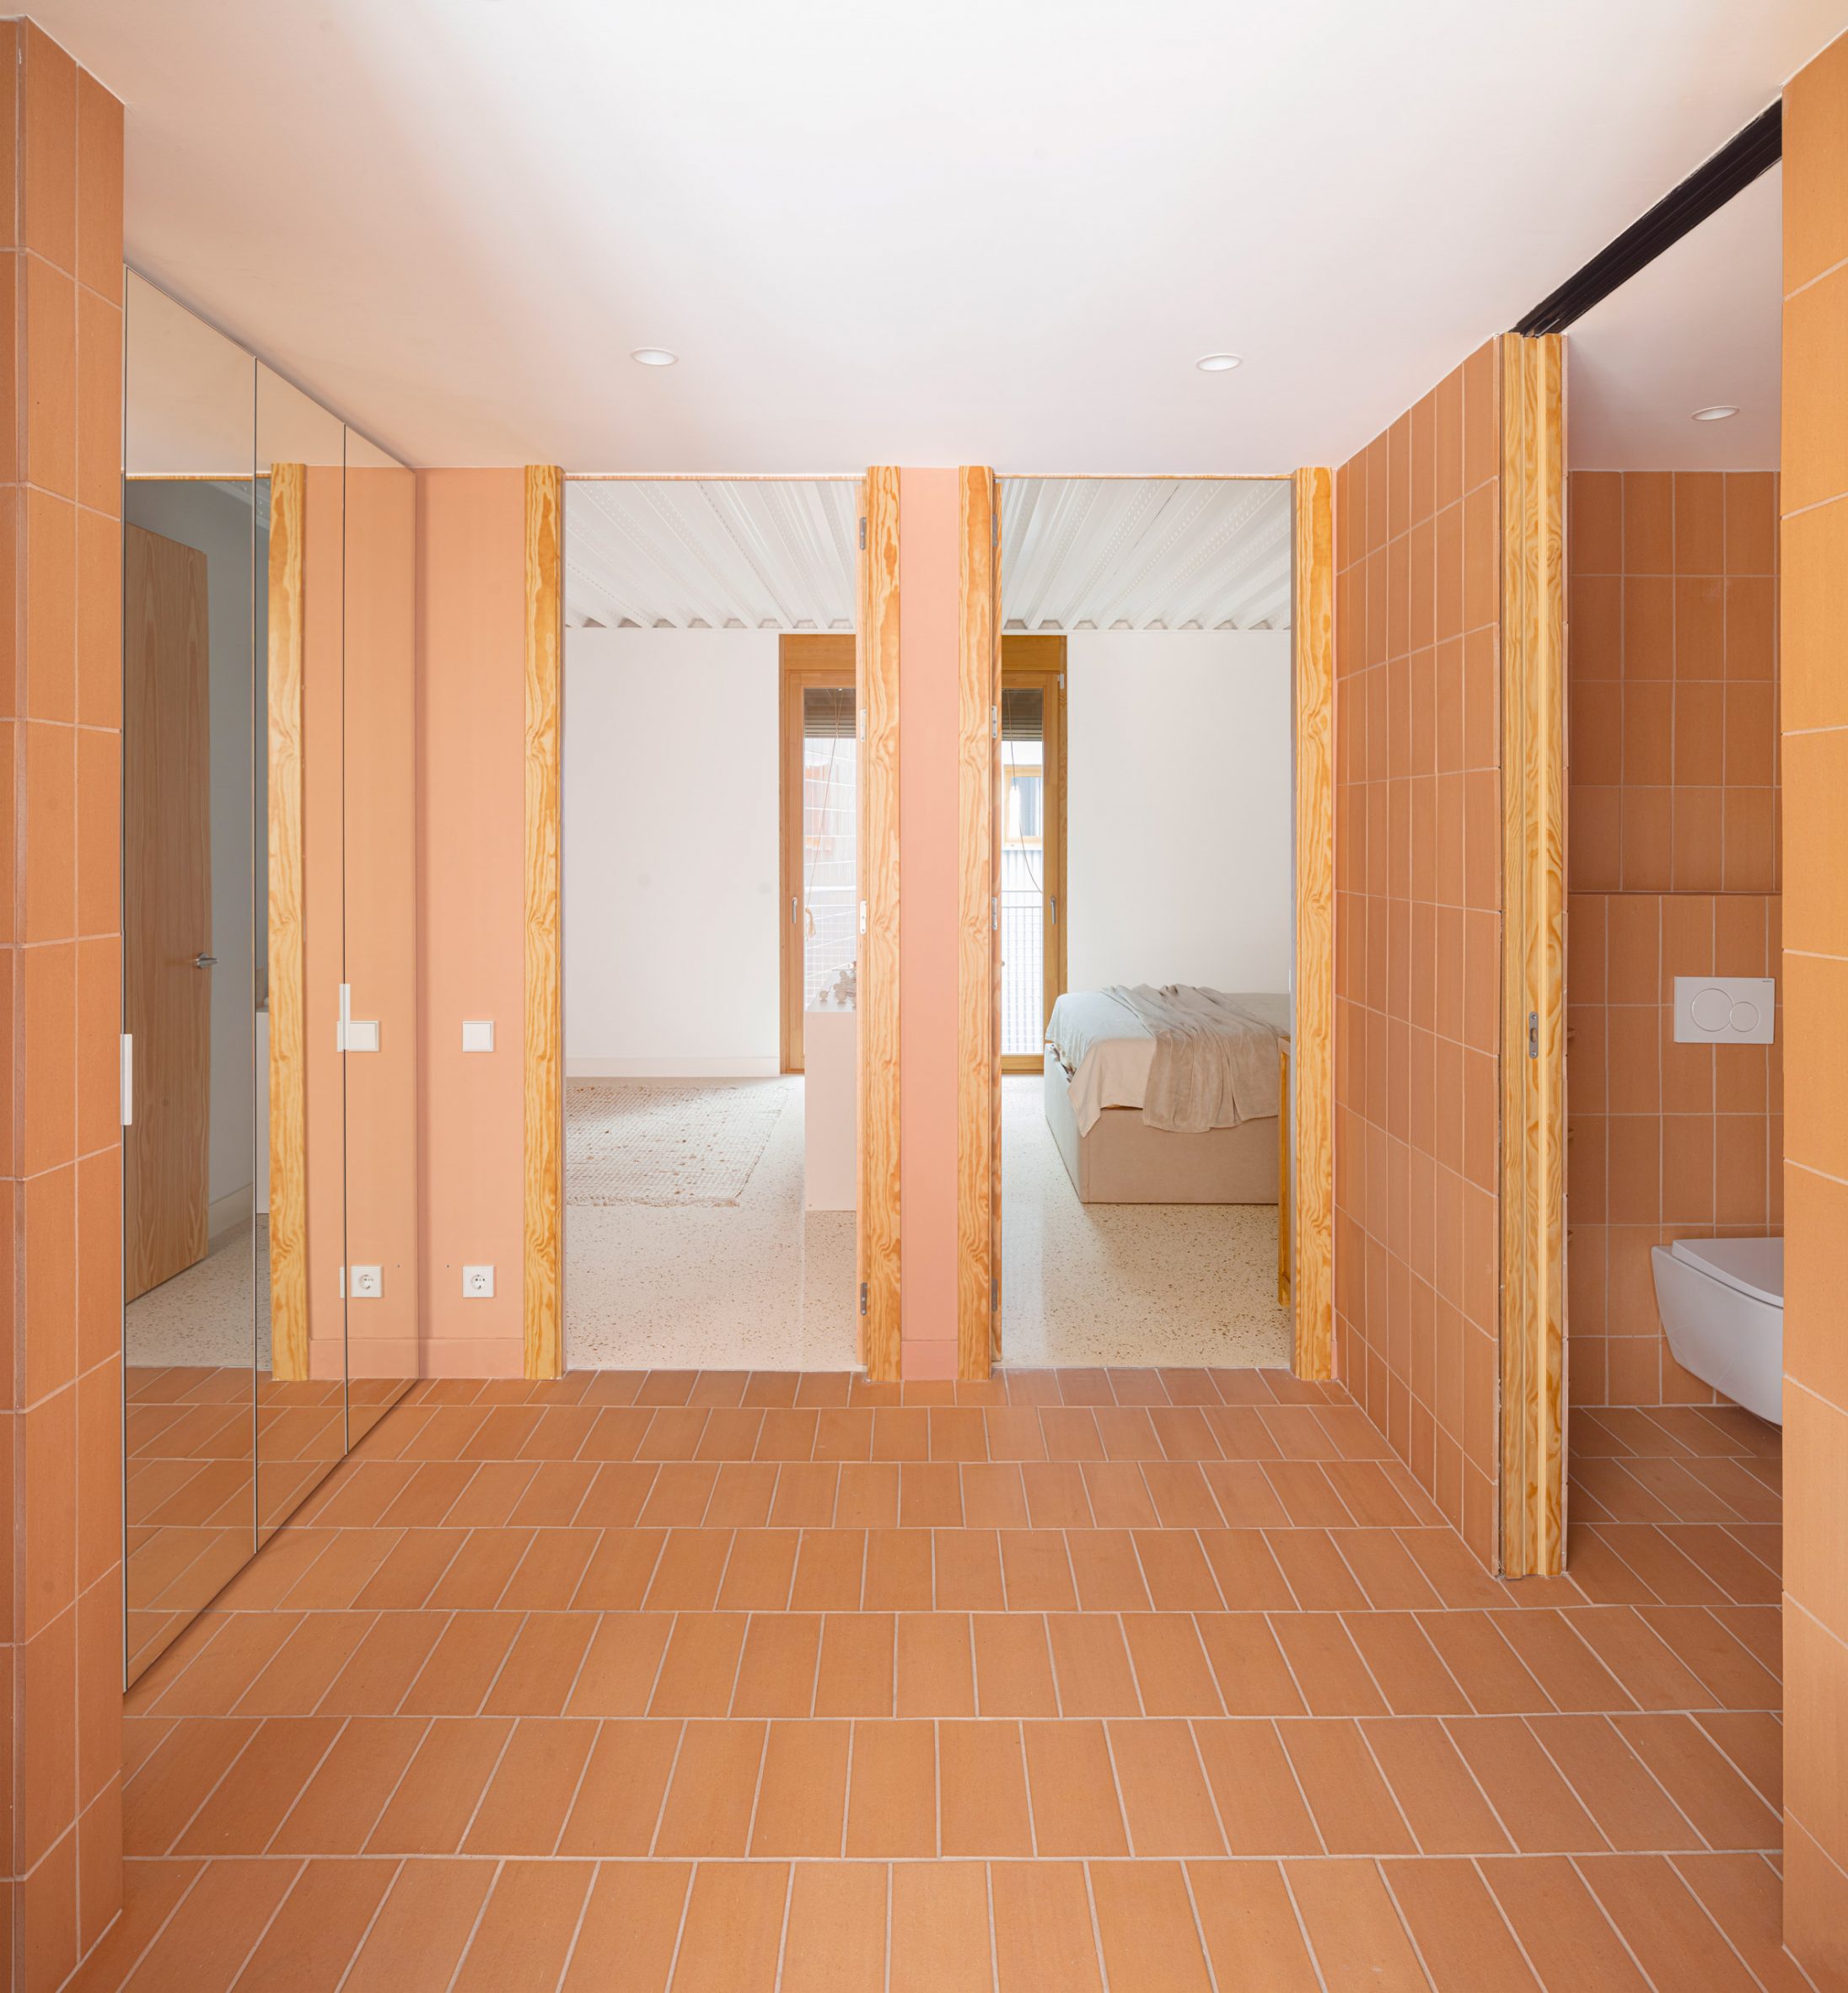 Bathroom interior within Churruca apartment block in Spain